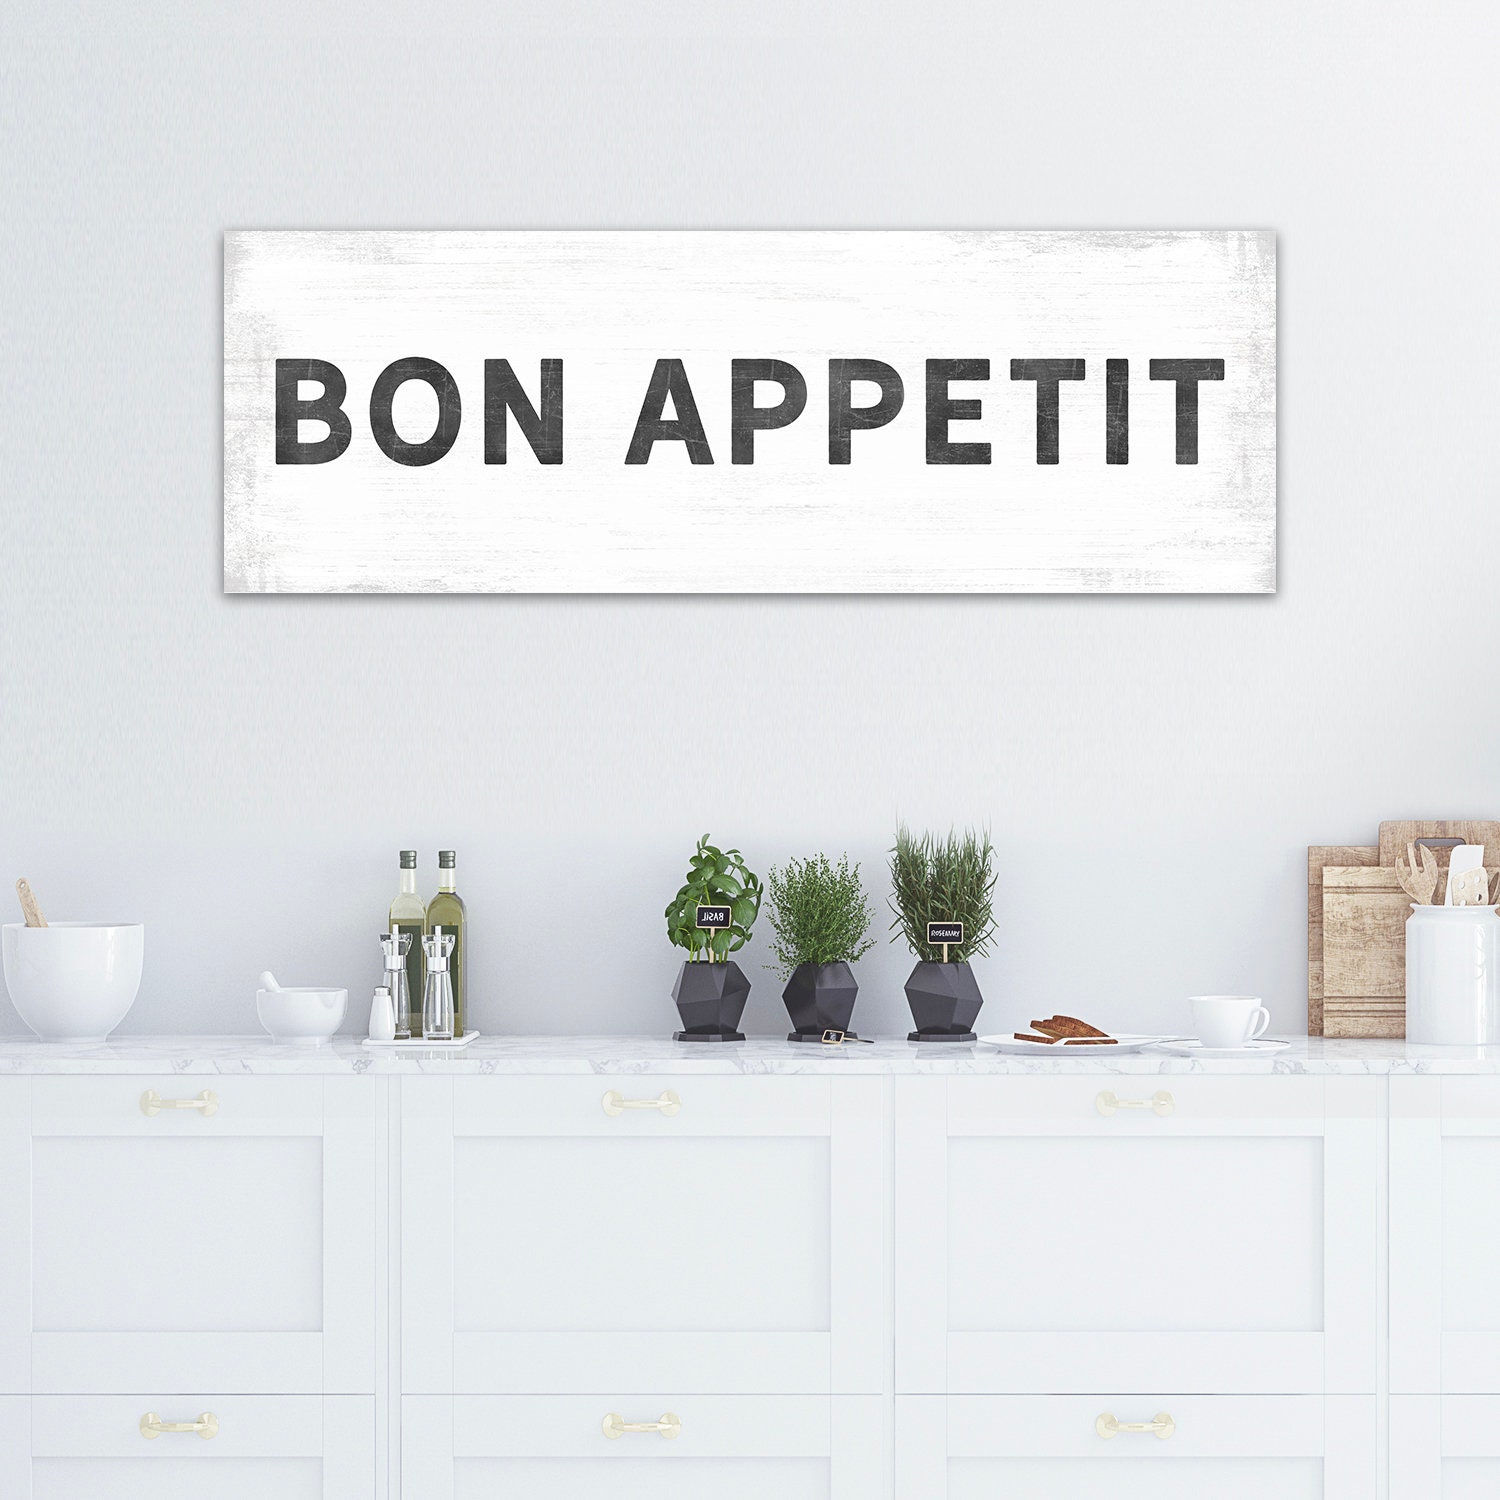 Large Bon Appetit Sign Bon Appetit Wall Art Bon Appetit | Etsy